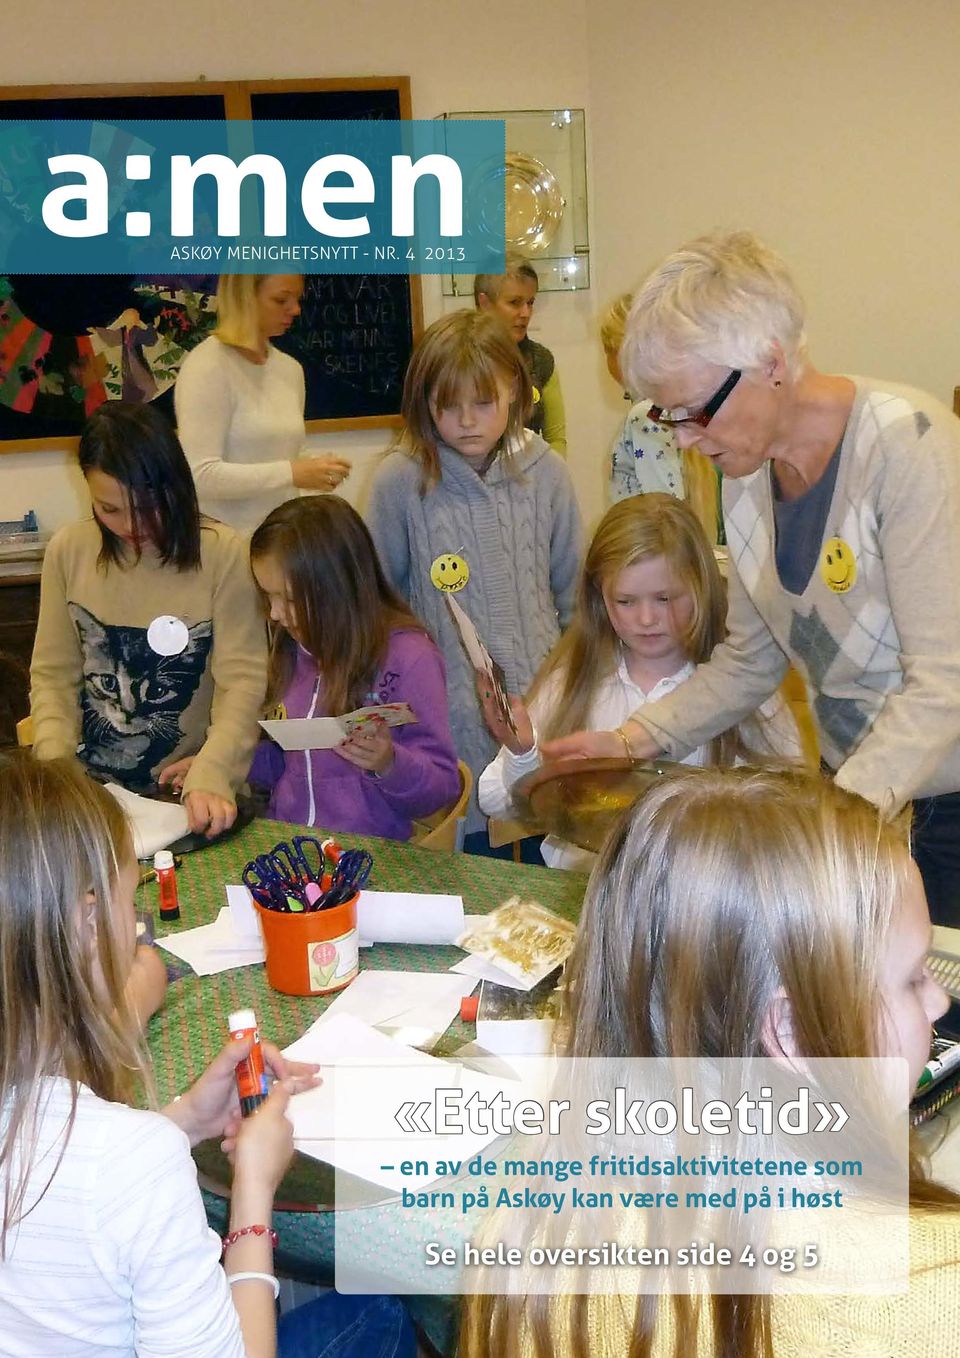 fritids aktivitetene som barn på Askøy